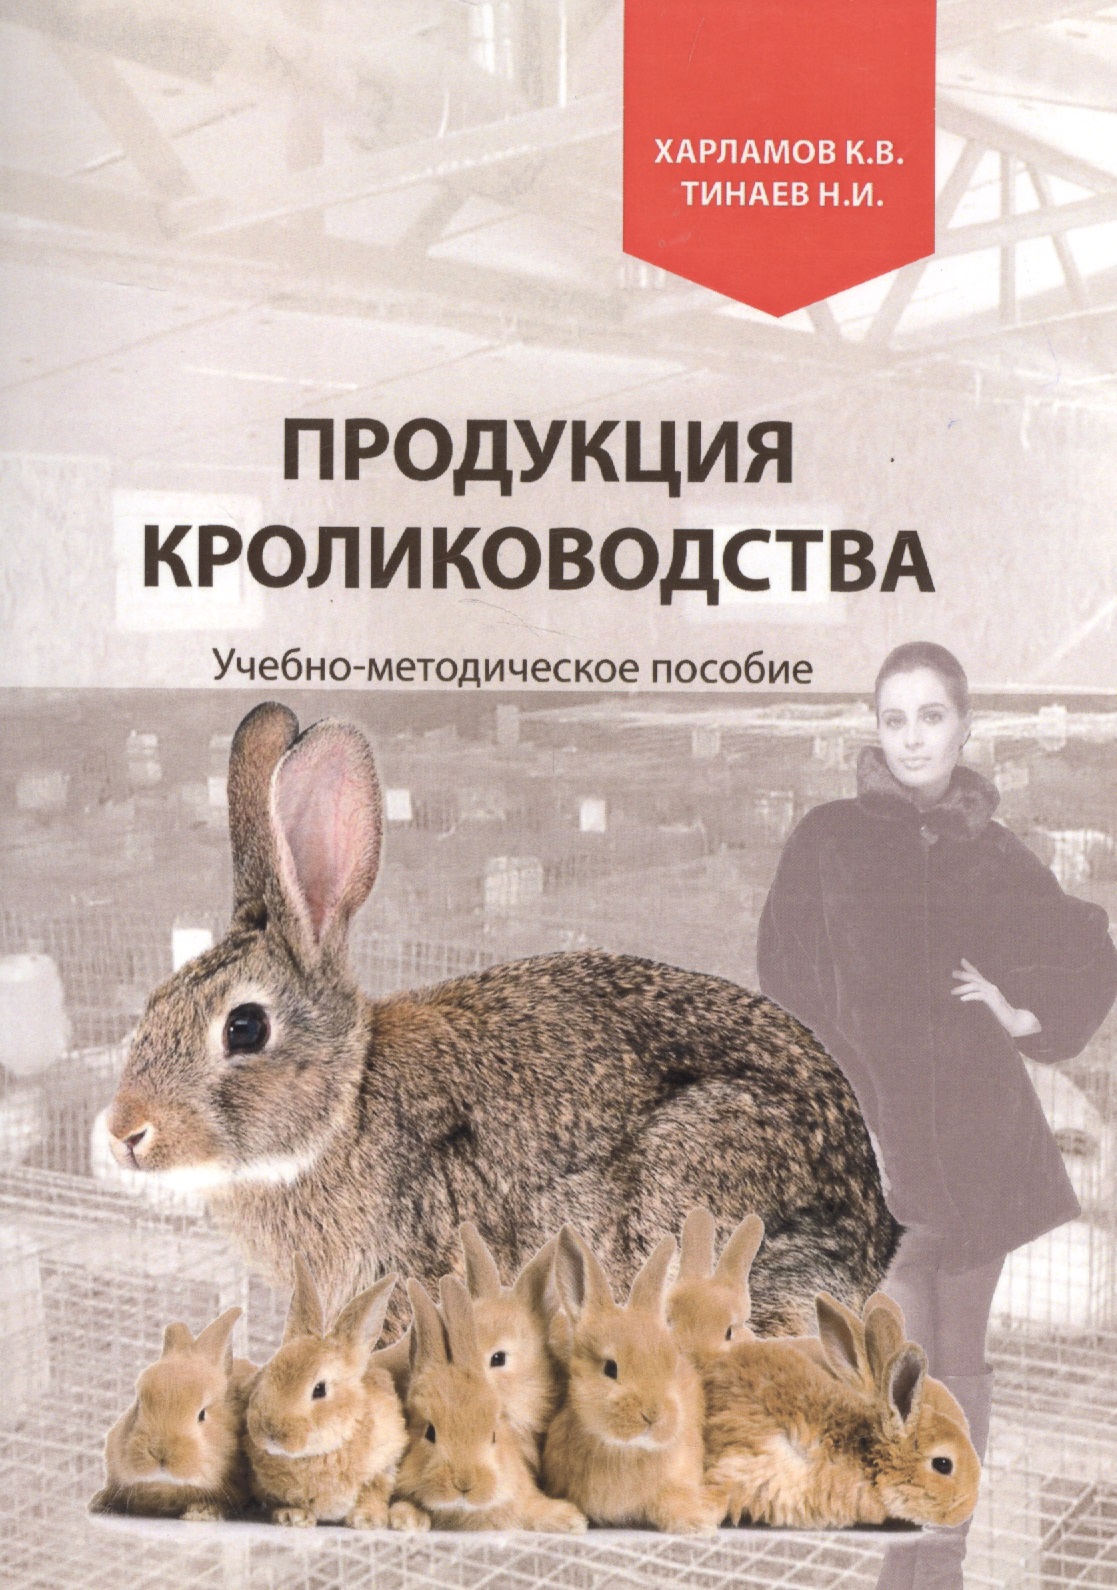 Продукция кролиководства. Учебно-методическое пособие